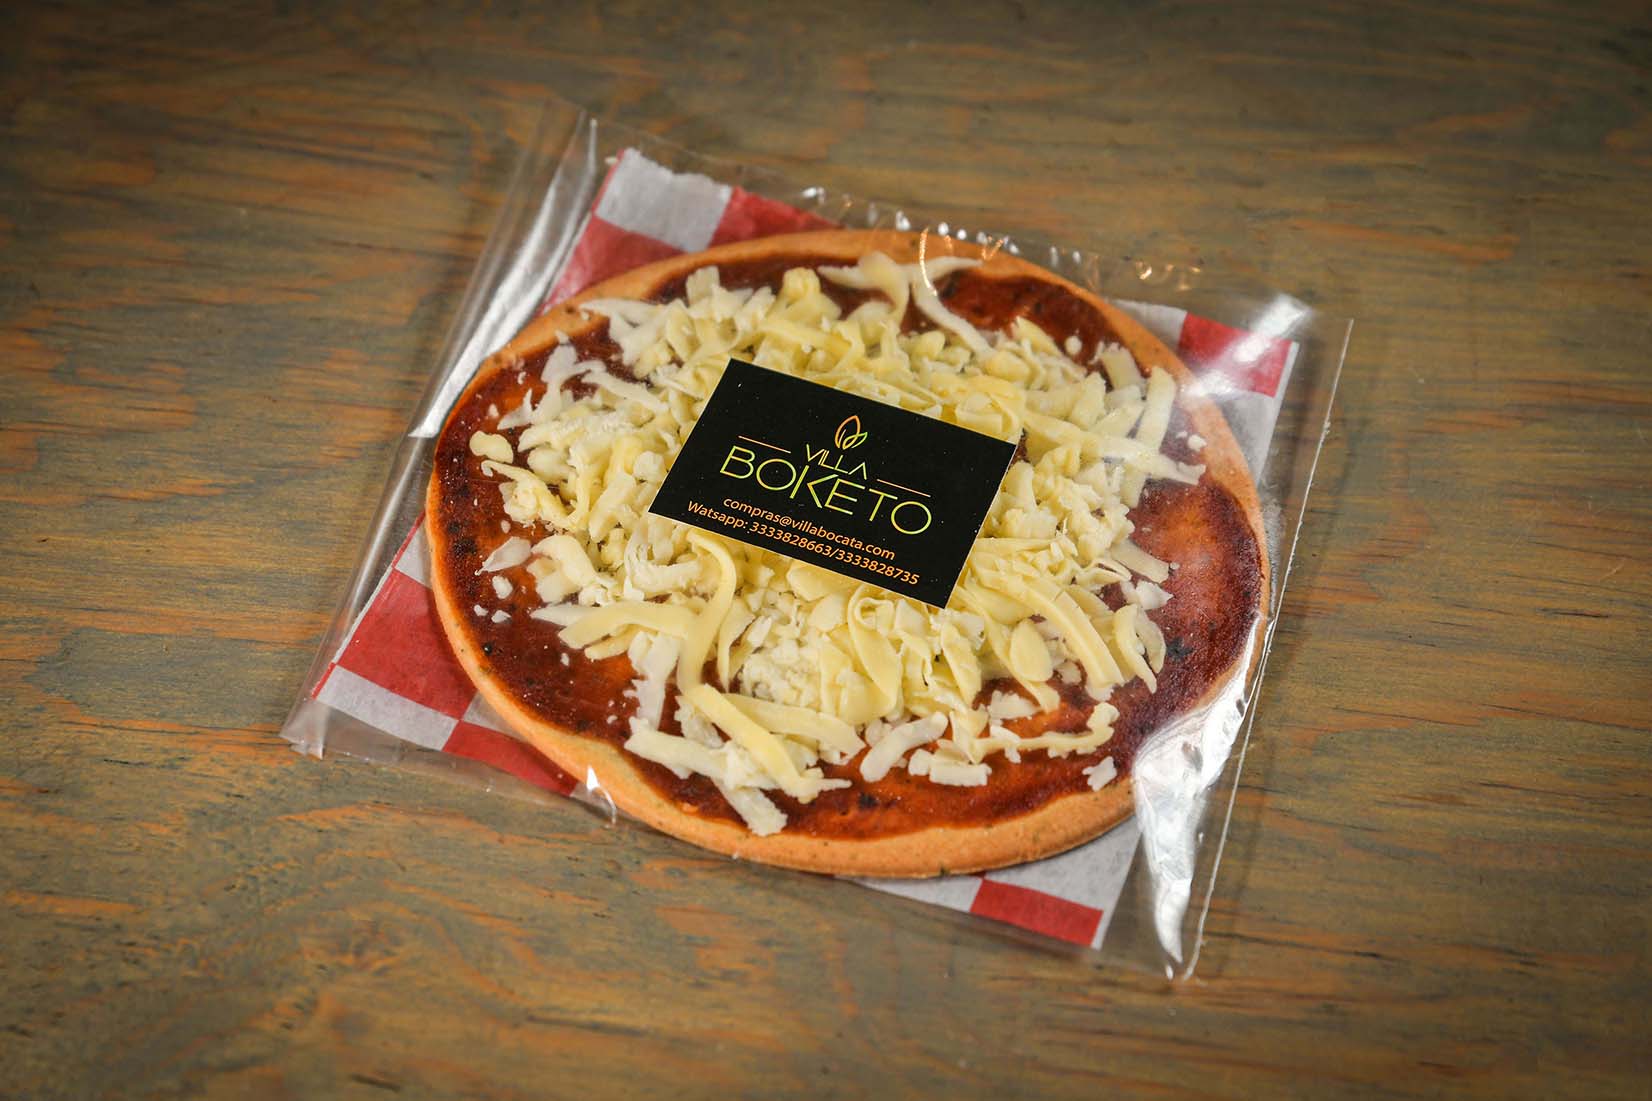 Base de pizza preparada keto- Villa Boketo